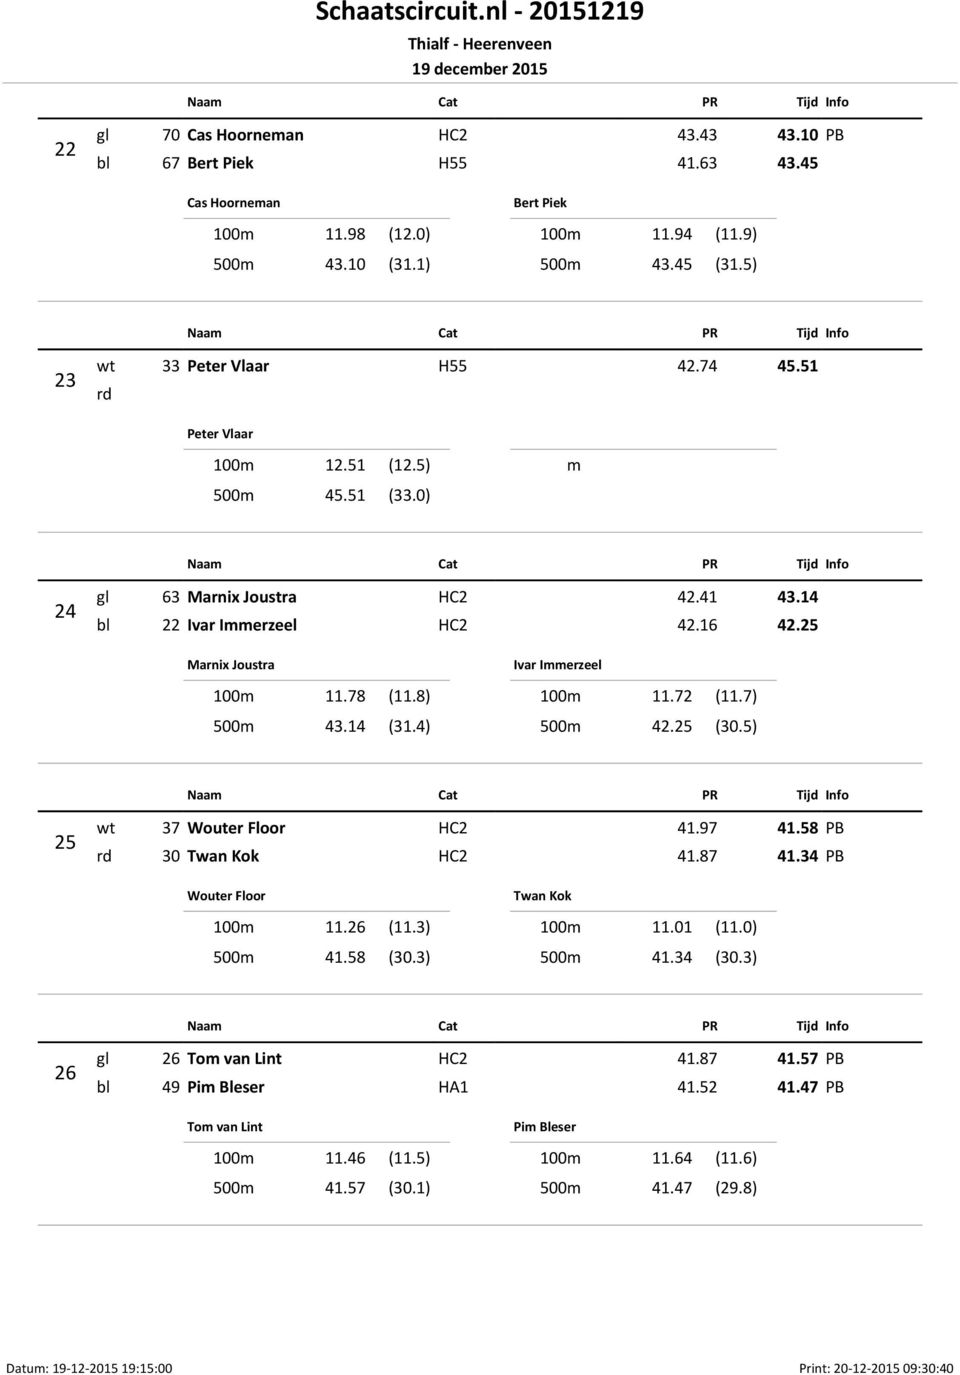 4) Ivar Immerzeel 100m 11.72 (11.7) 500m 42.25 (30.5) 25 wt 37 Wouter Floor HC2 41.97 41.58 rd 30 Twan Kok HC2 41.87 41.34 Wouter Floor 100m 11.26 (11.3) 500m 41.58 (30.3) Twan Kok 100m 11.01 (11.